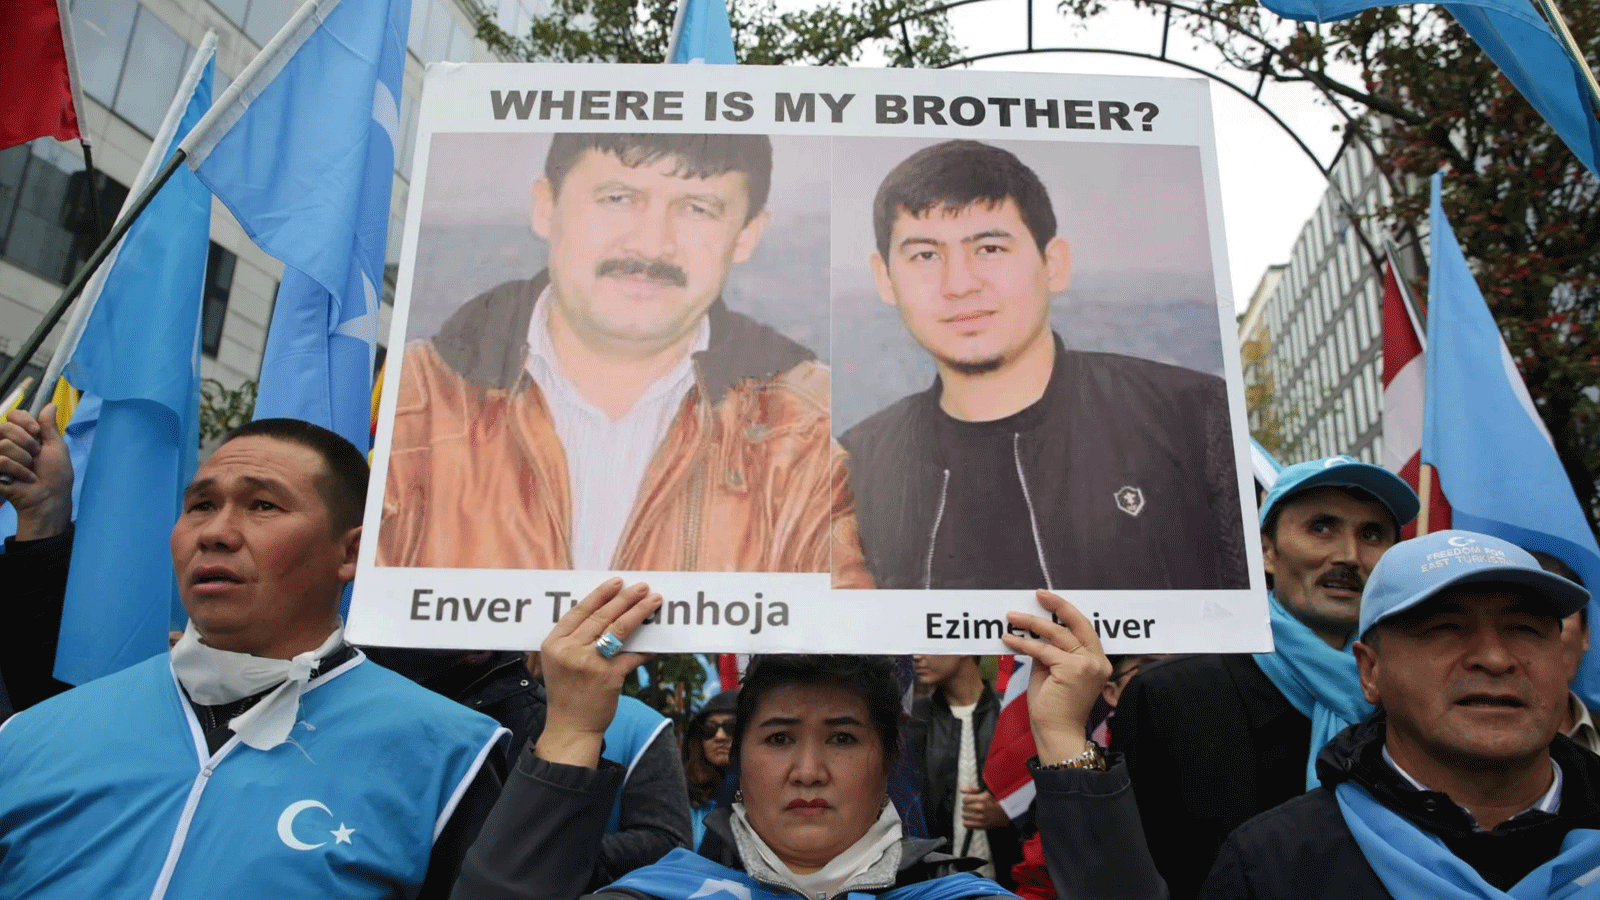 المتظاهرون يشاركون في يوم الذكرى السبعين لتأسيس جمهورية الصين الشعبية، في احتجاج نظمه المؤتمر العالمي للإيغور في بروكسل. 1 تشرين الأول\ أكتوبر 2019 